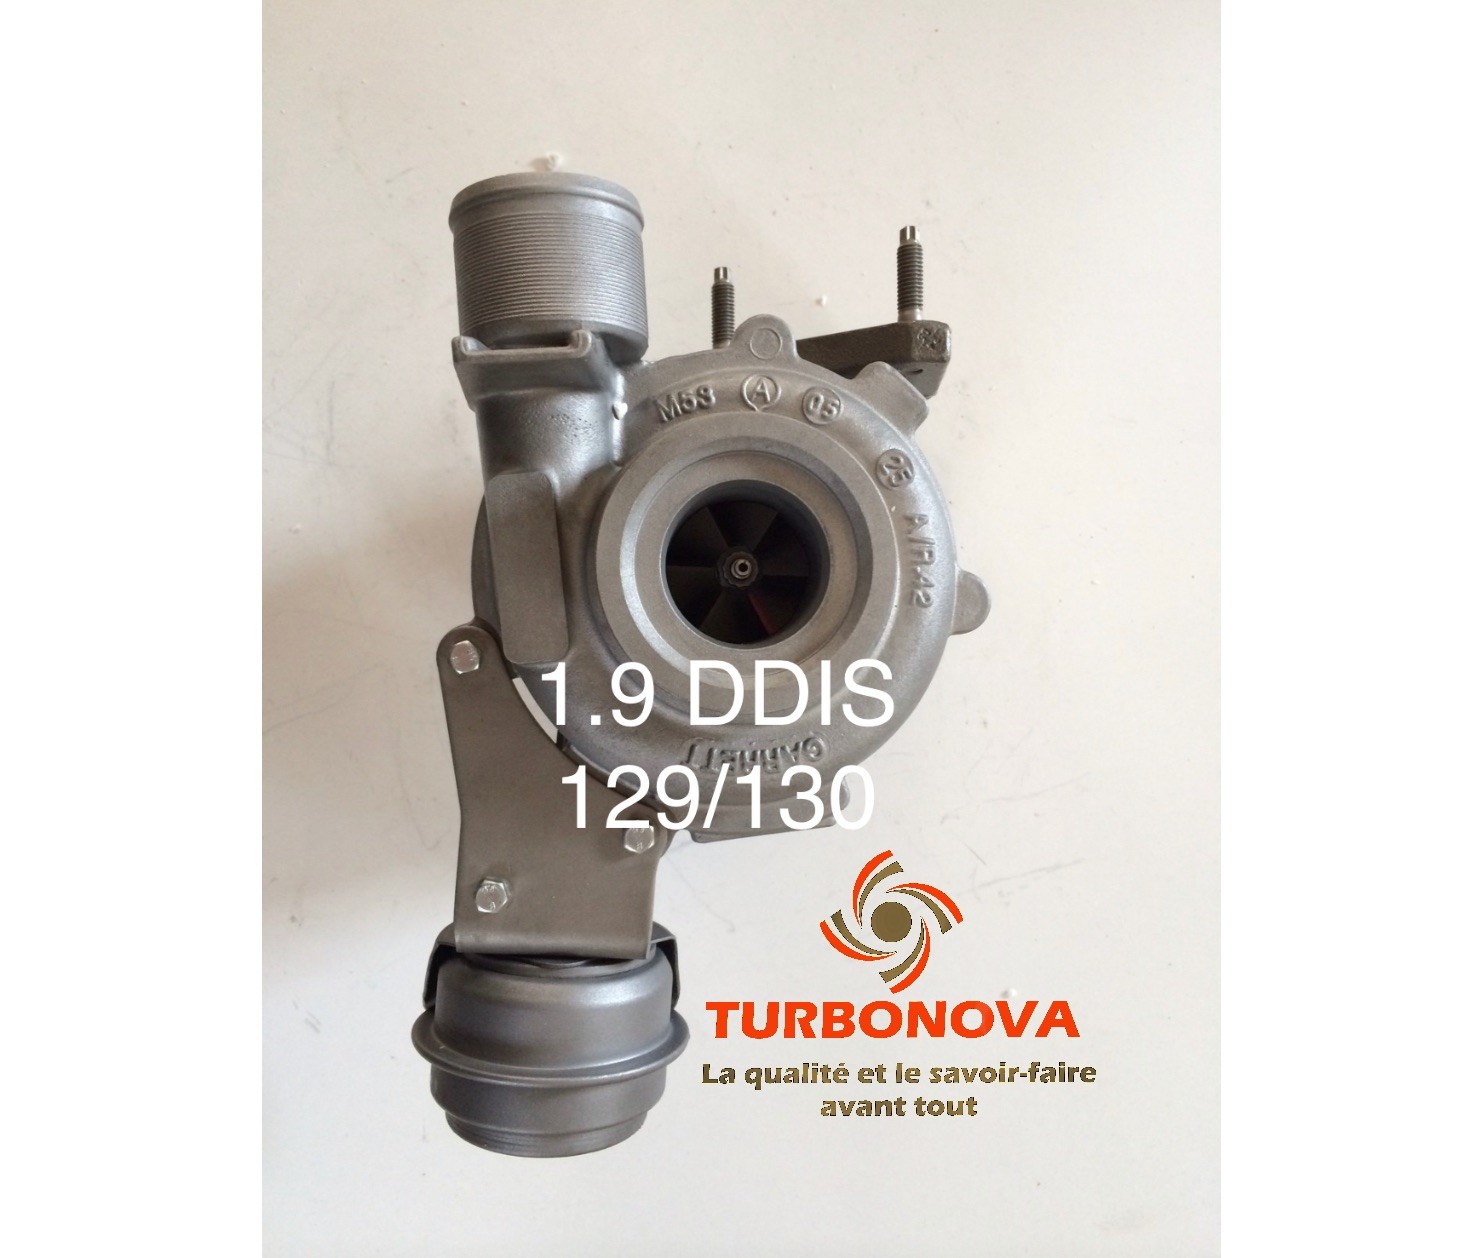 Turbo 1.9 DDIS 129/130